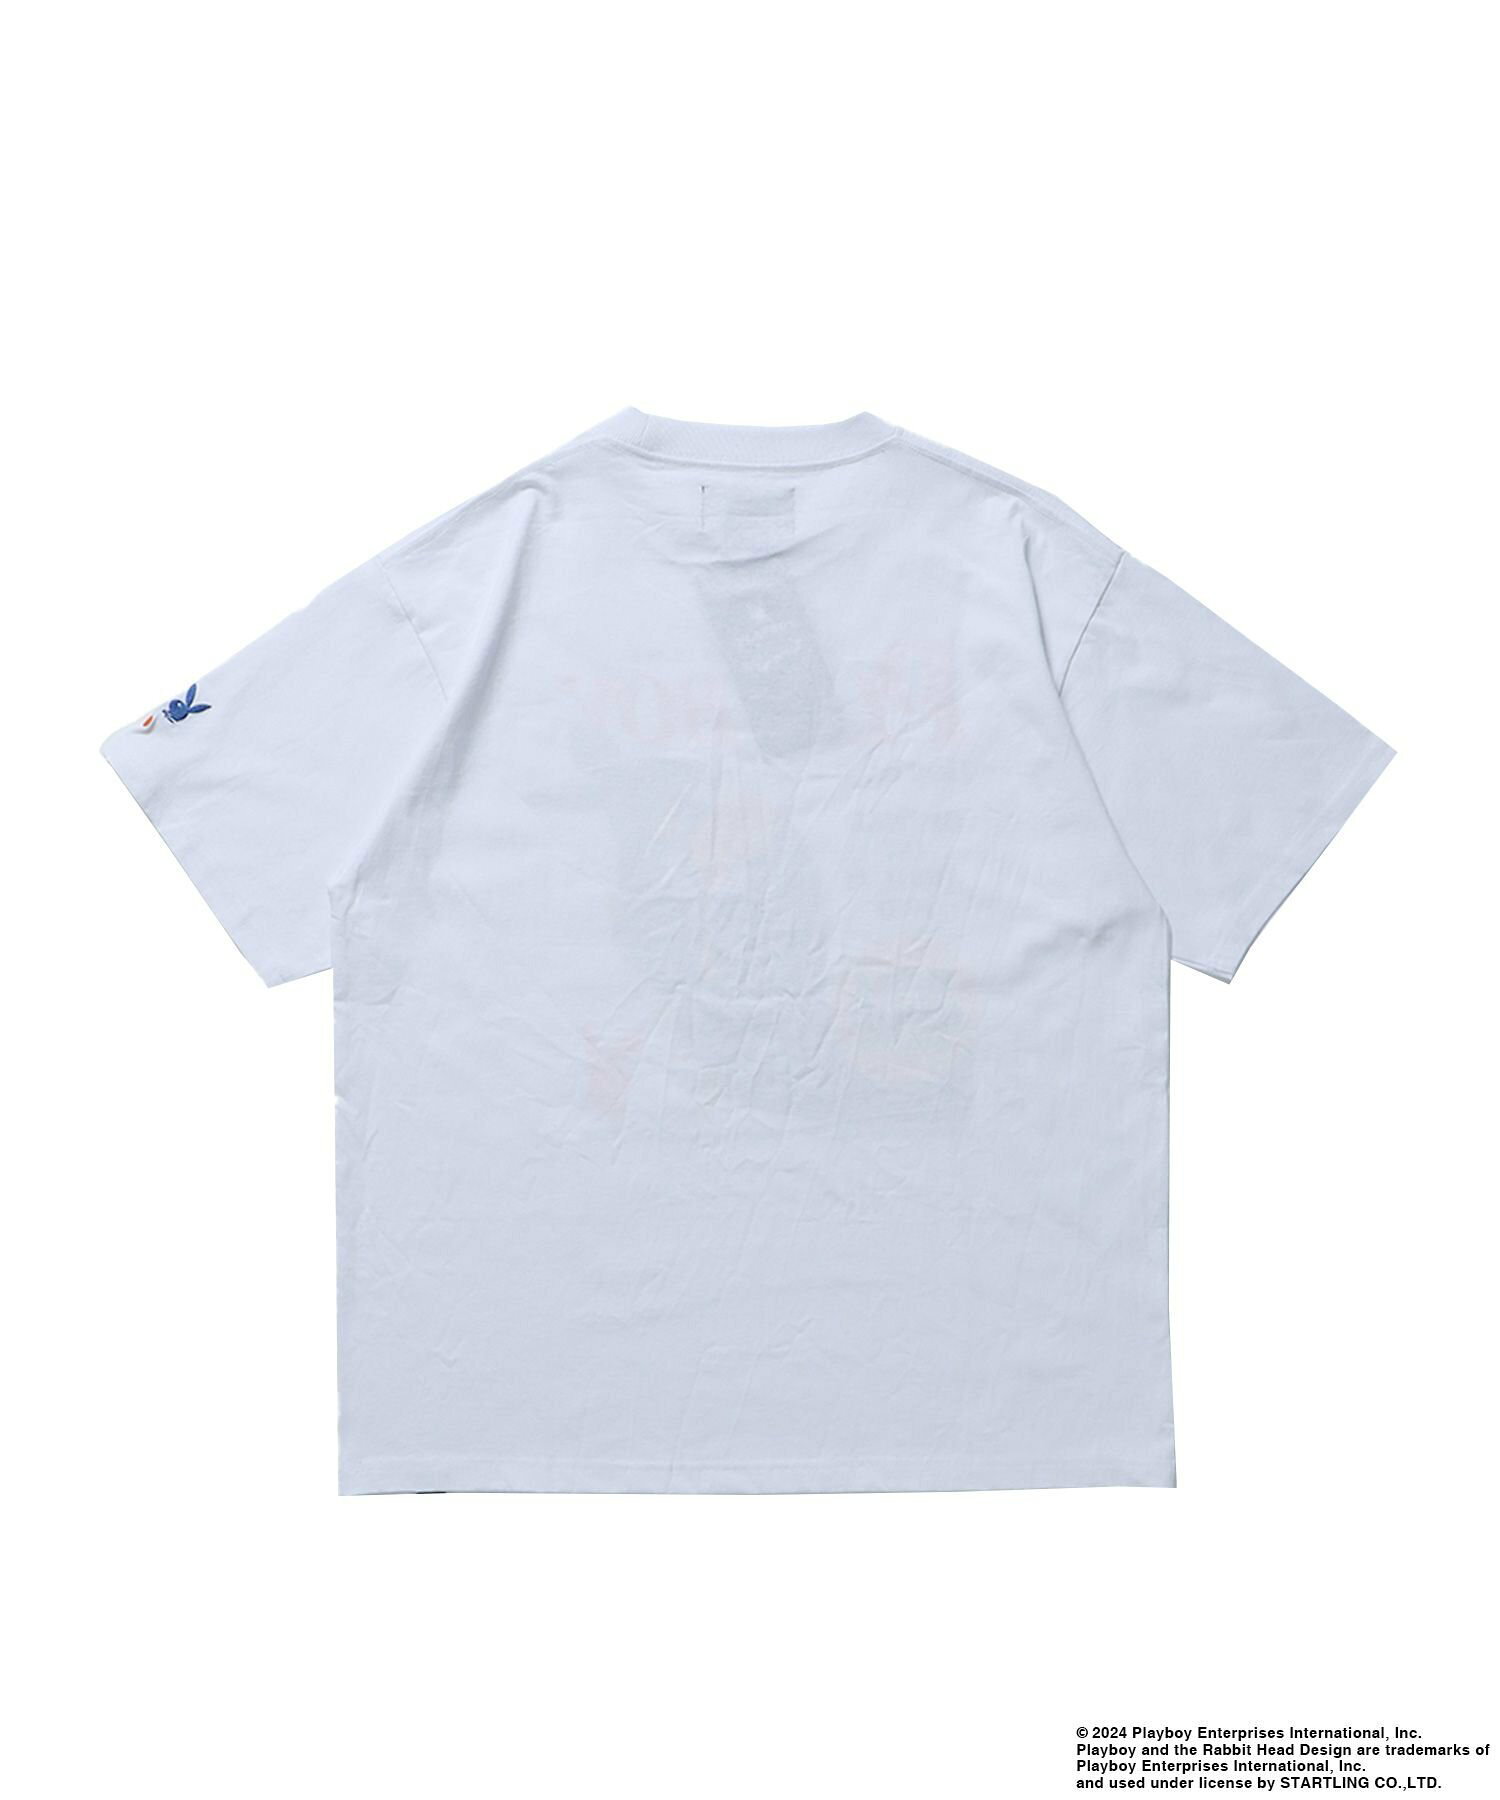 【SEQUENZ】PBHC FLYER S/S TEE / プレイボーイ 半袖Tシャツ バックプリント 刺繍 ブランドロゴ バニー ガール